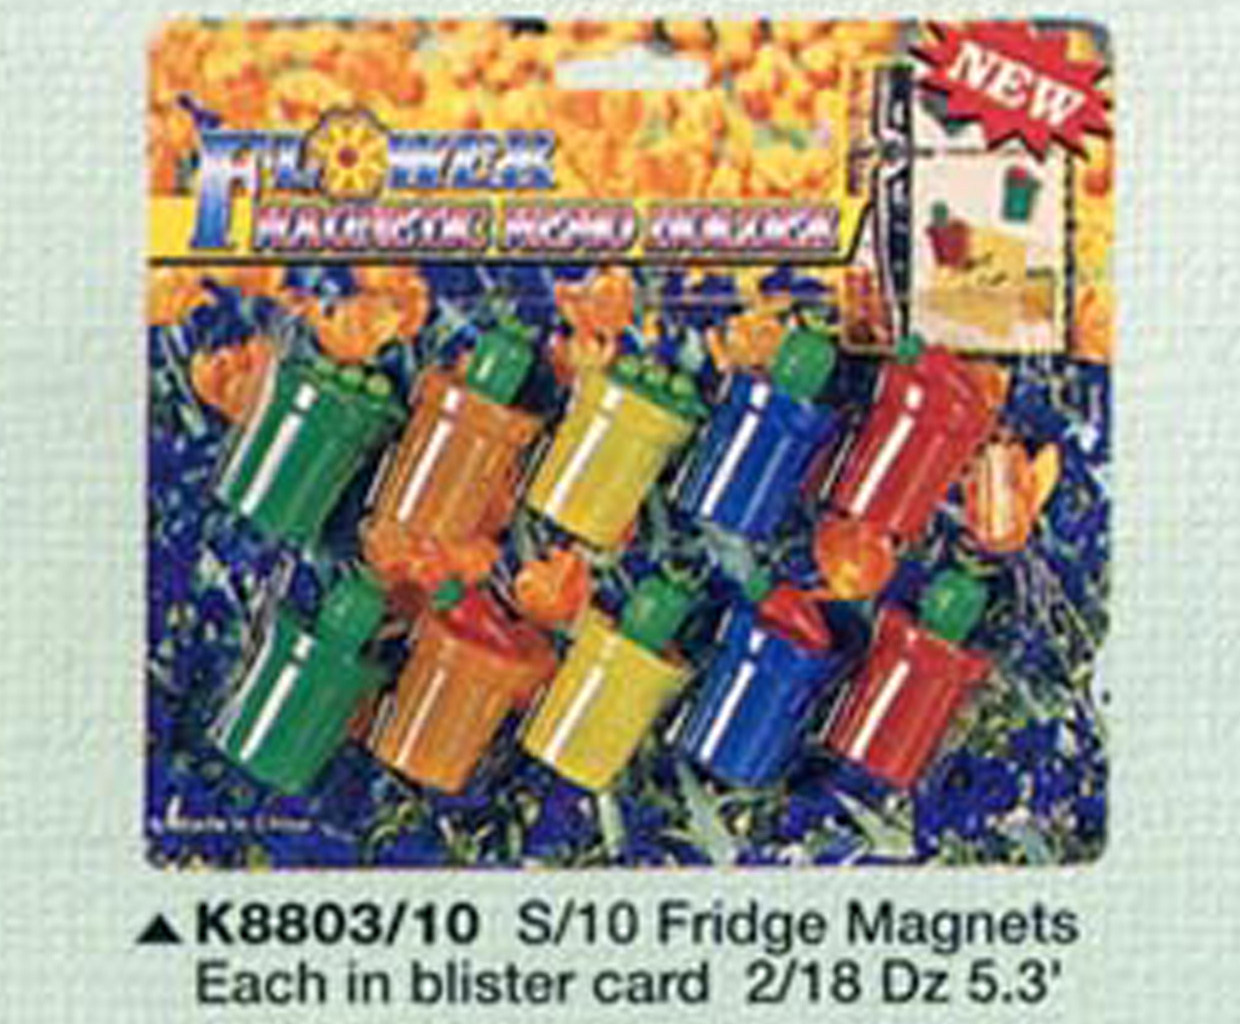 K8803/10 S/10 FRIDGE MAGNETS